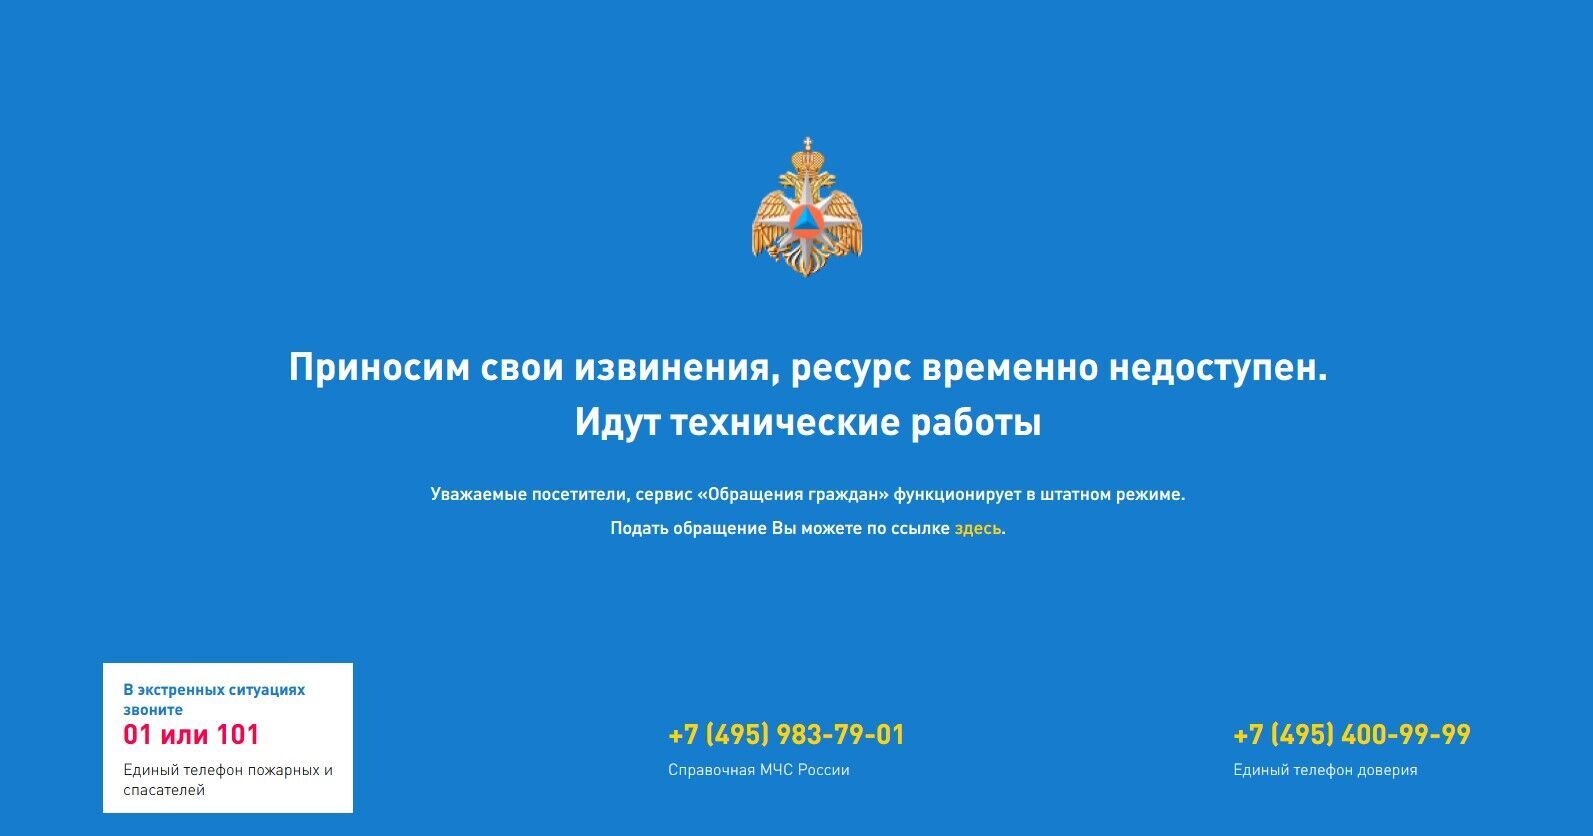 Сайт МЧС России взломали и загрузили реальные данные о войне в Украине